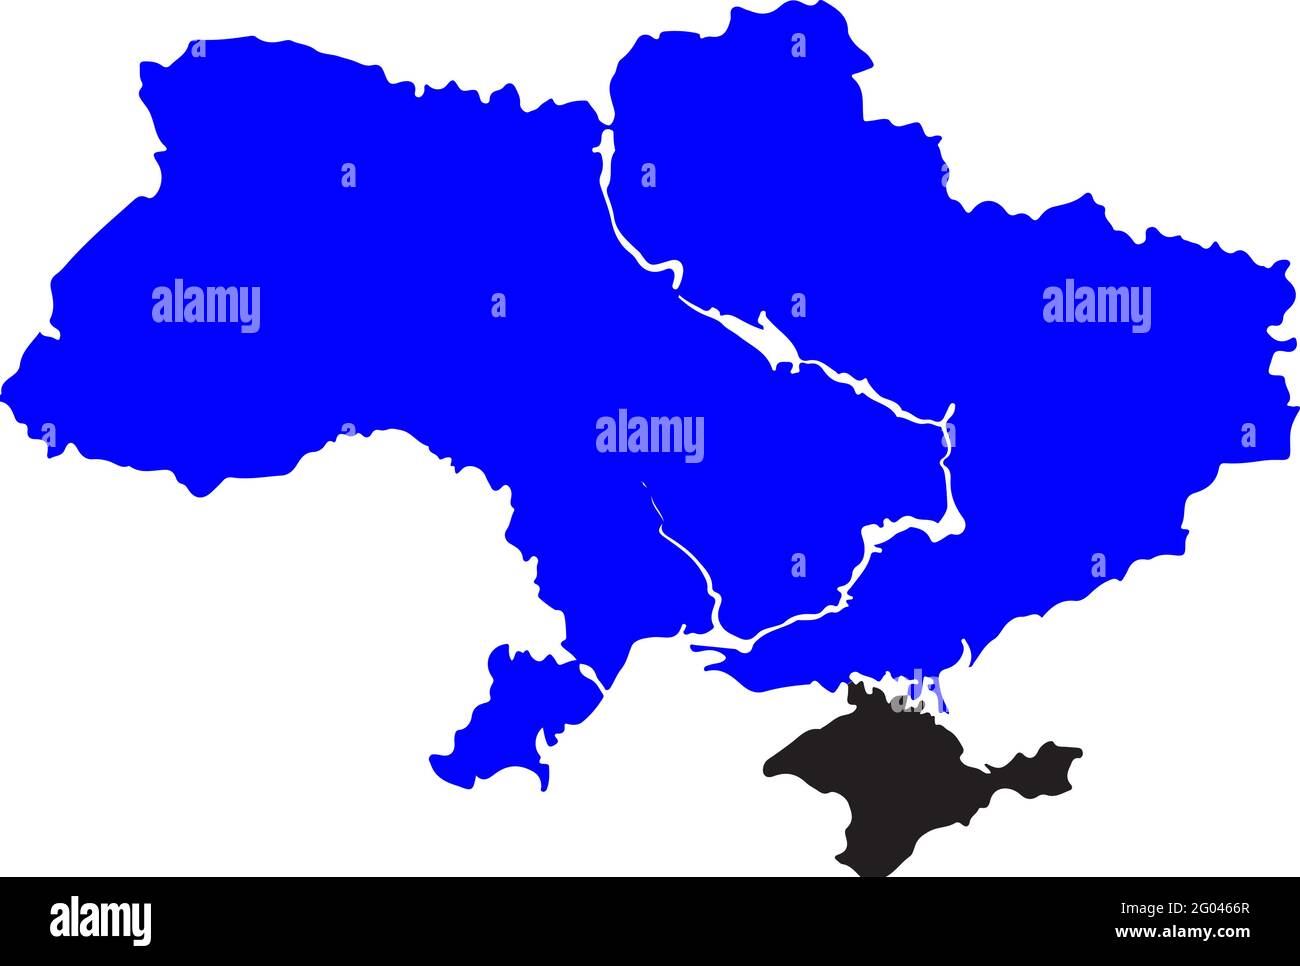 Blau kolorierte Ukraine-Karte. Landkarte der politischen Ukraine. Krim-Halbinsel. Krimkrieg und russischer Konflikt. Russische krim-Annexion. Vektorgrafik ma Stock Vektor